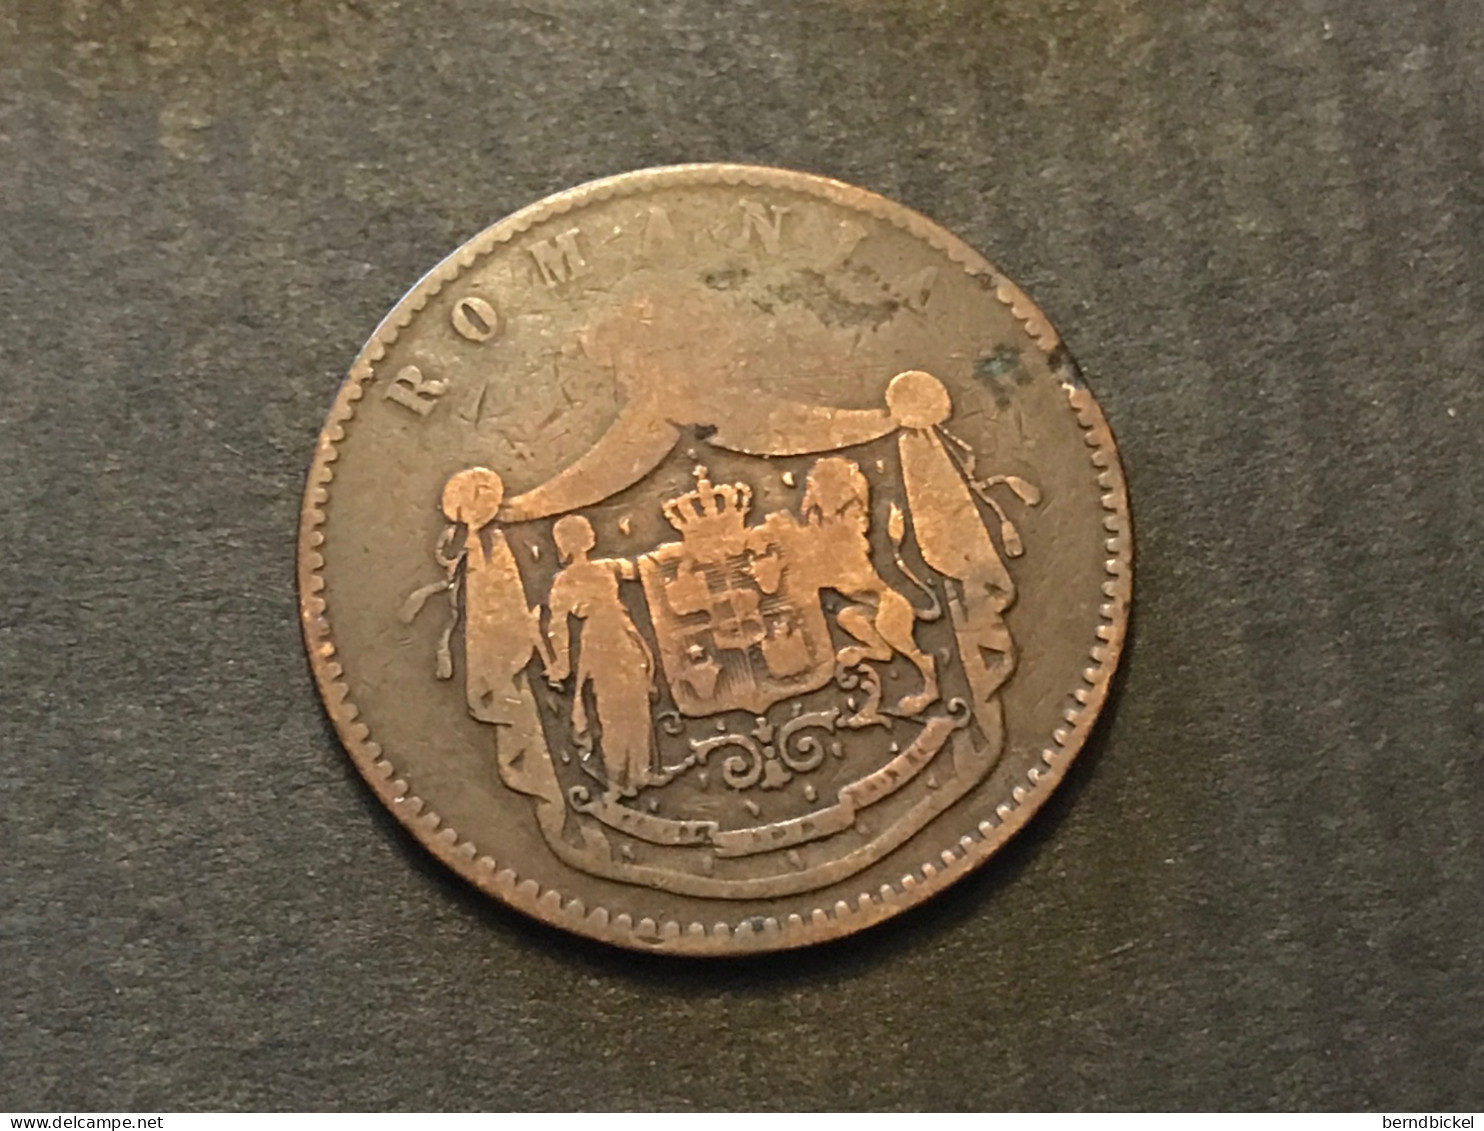 Münze Münzen Umlaufmünze Rumänien 10 Bani 1867 "Watt" - Roumanie